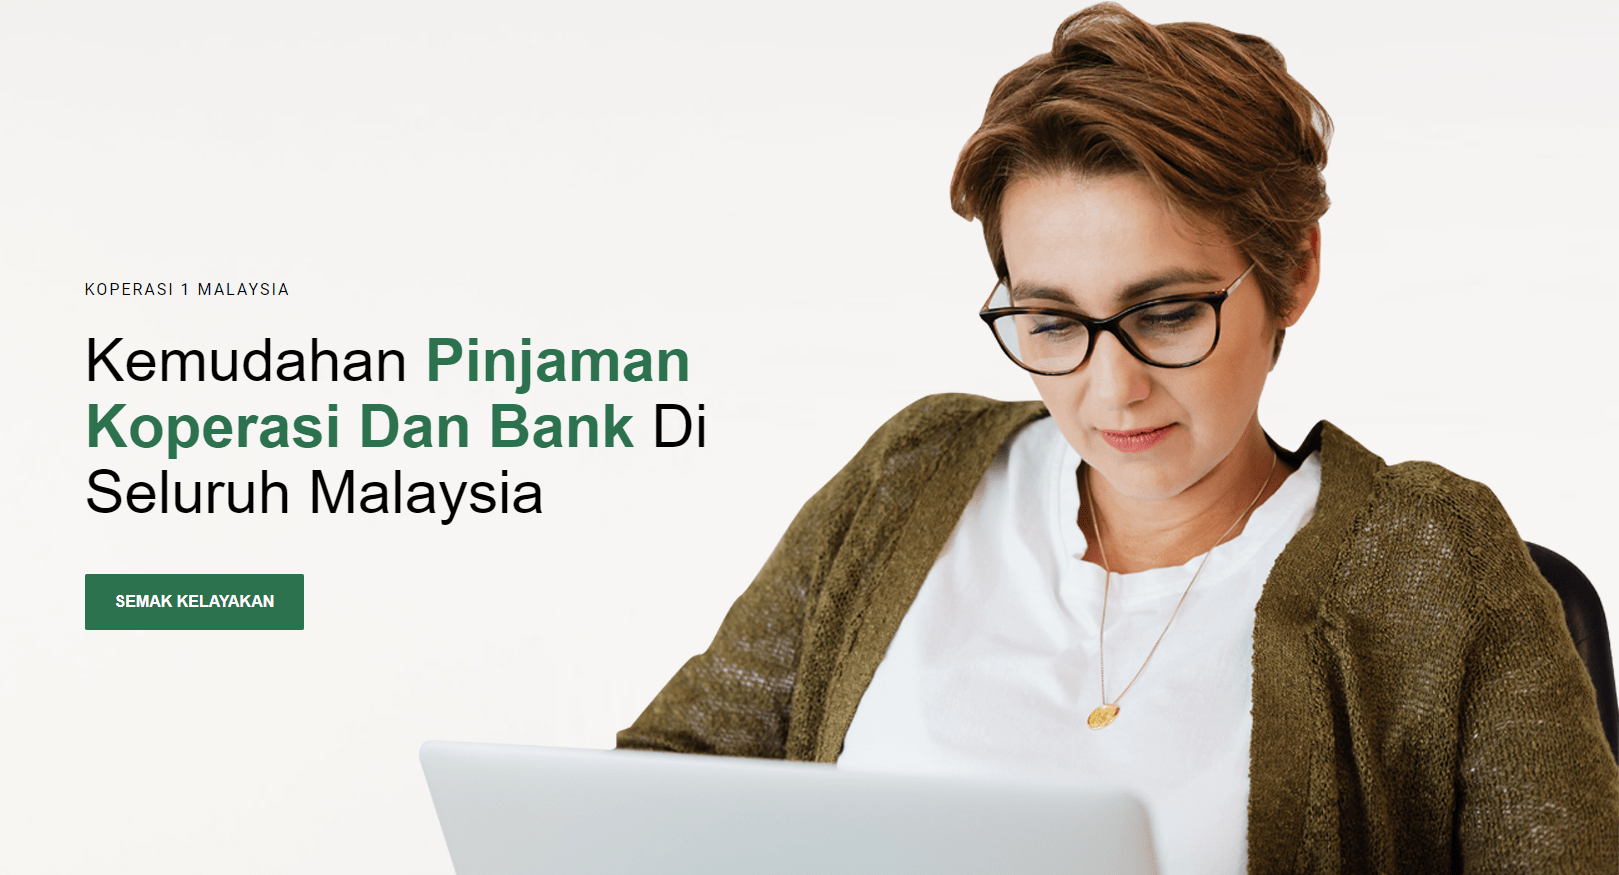 Pinjaman Koperasi Loan Kerajaan Malaysia Slider - Koperasi 1Malaysia - Kuala Lumpur Loan Islamic-min